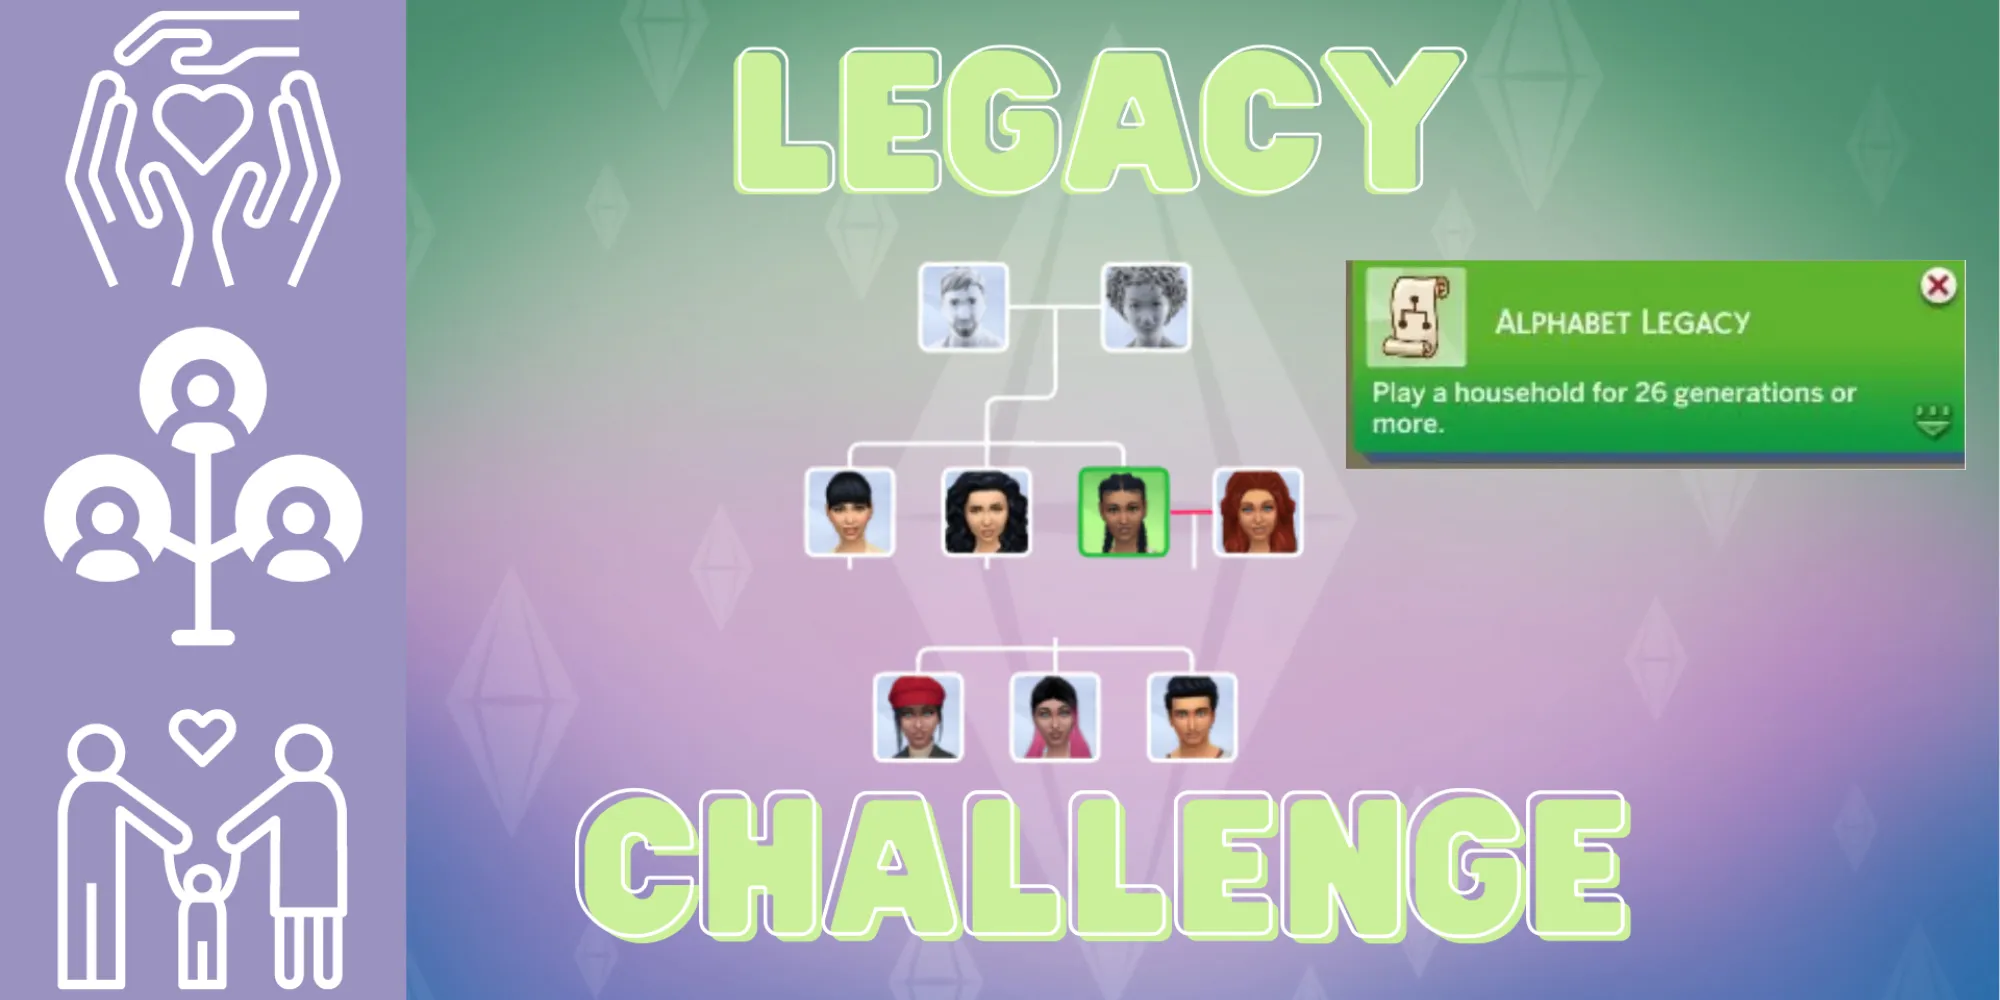 Генеалогическое древо из The Sims 4, связанное с челленджем Алфавитного Легаси